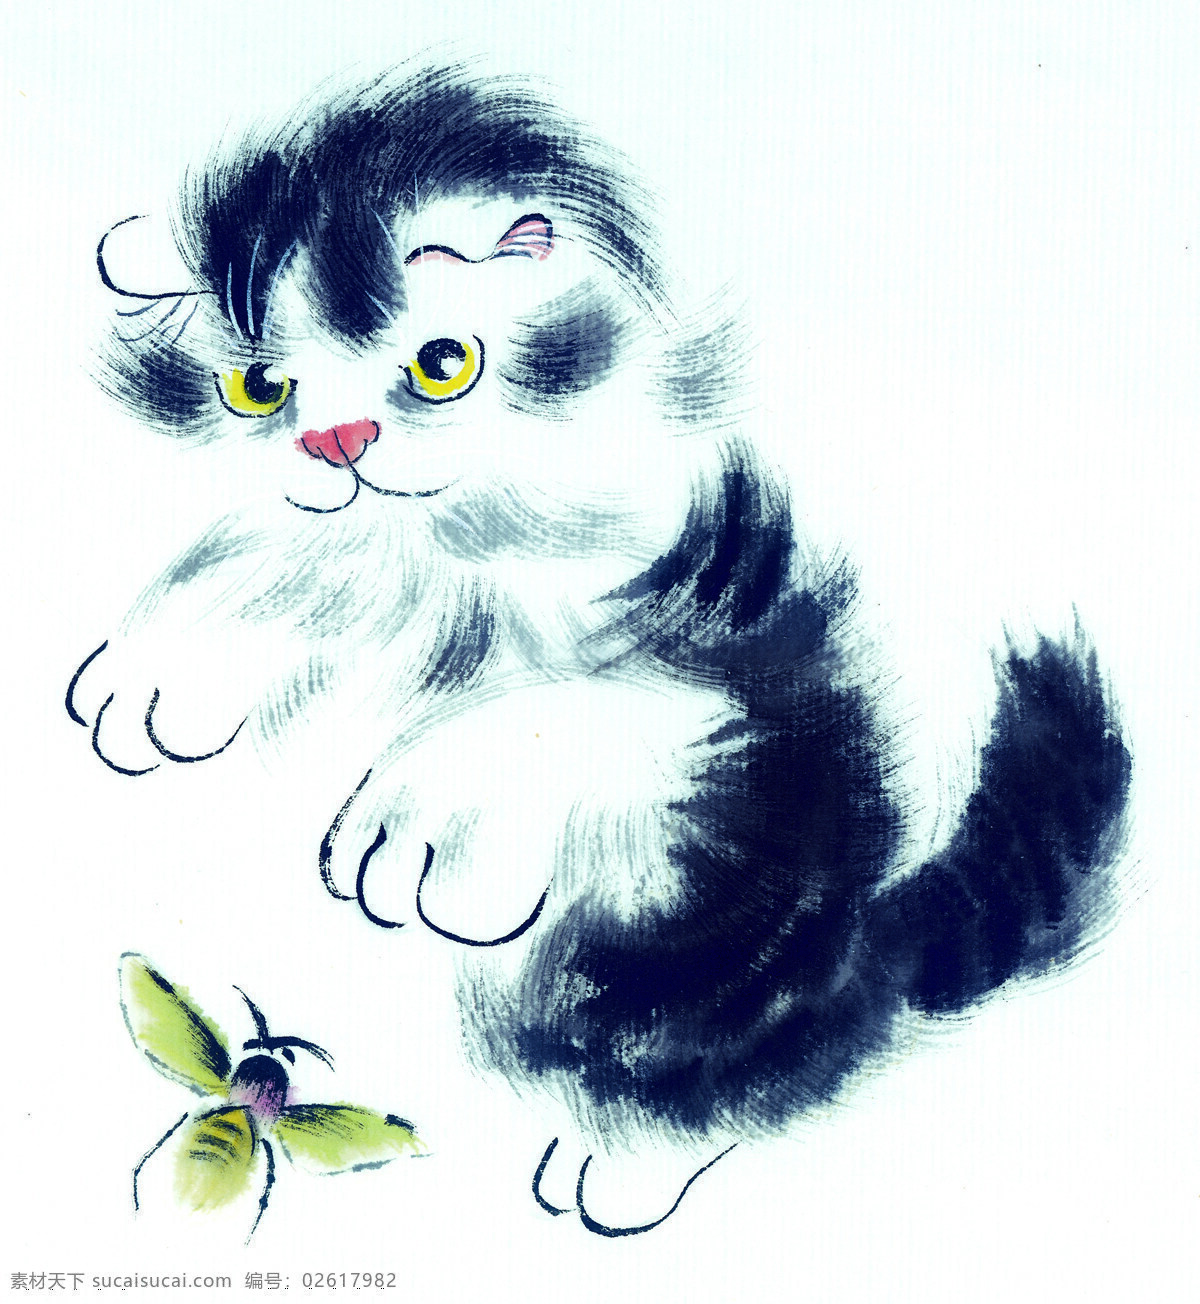 中国国画篇 猫 国画 水墨 工笔 蜜蜂 中国国画篇猫 文化艺术 绘画书法